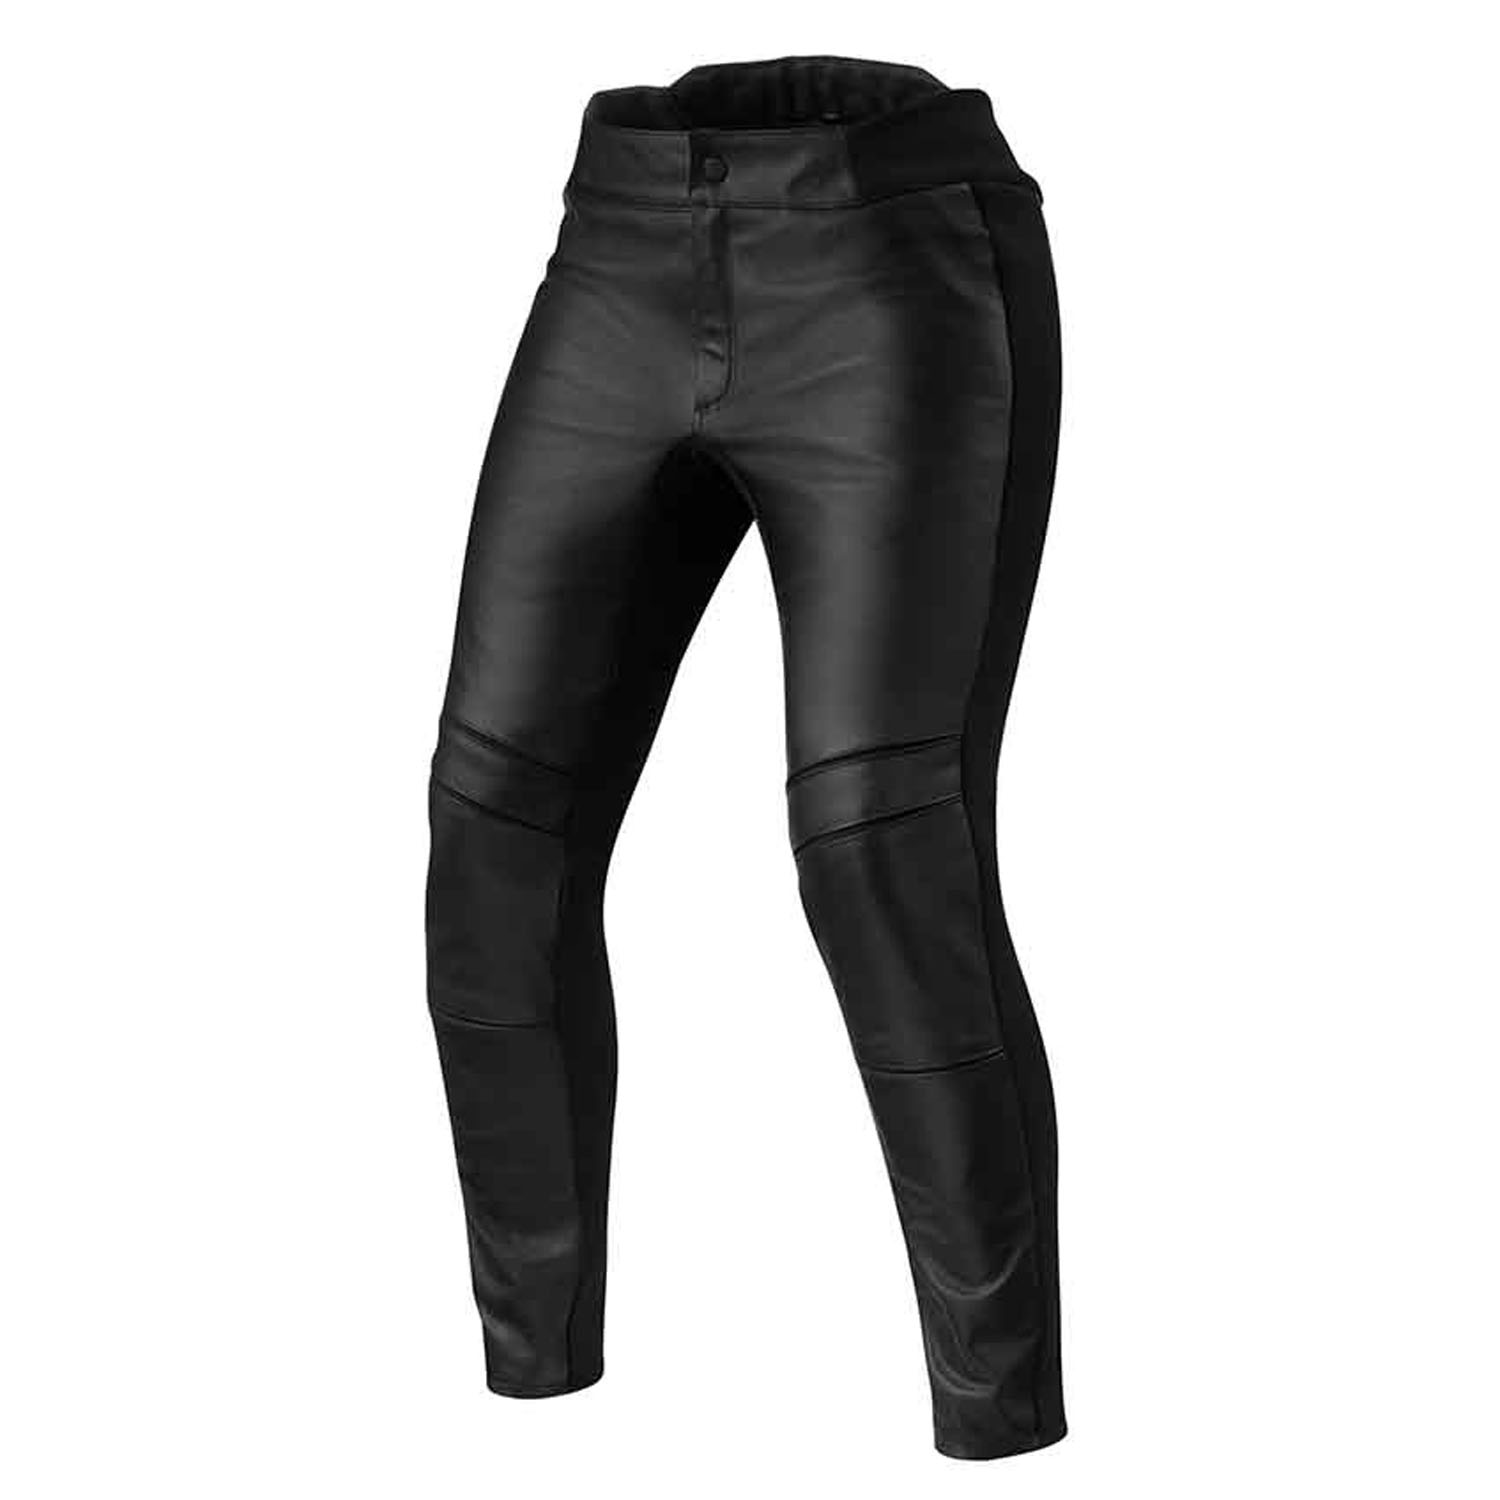 Image of REV'IT! Maci Ladies Black Standard Motorcycle Pants Größe 36